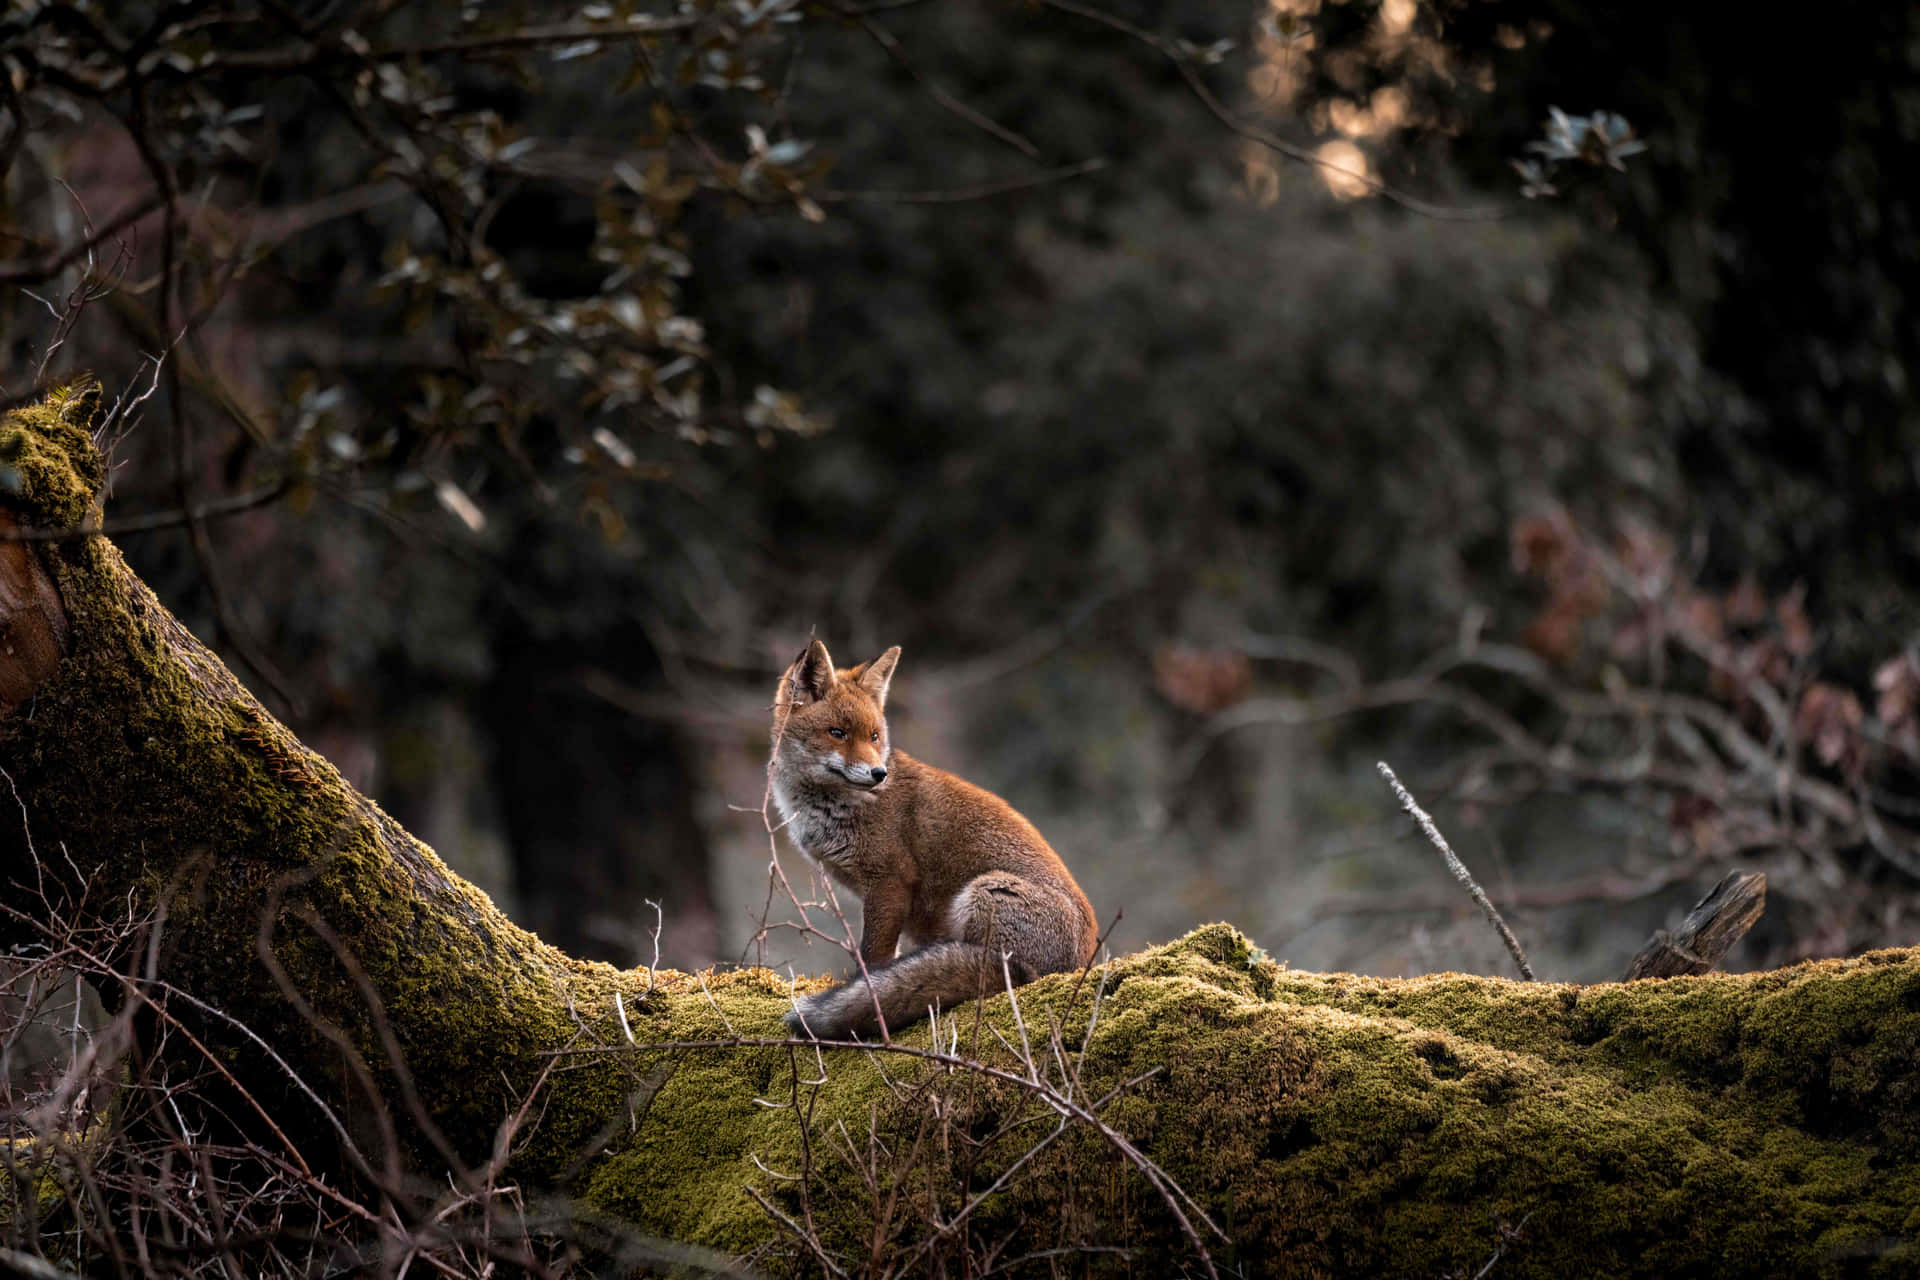 Einorangener Fuchs Steht Auf Einem Felsen, Umgeben Von Üppiger Vegetation.